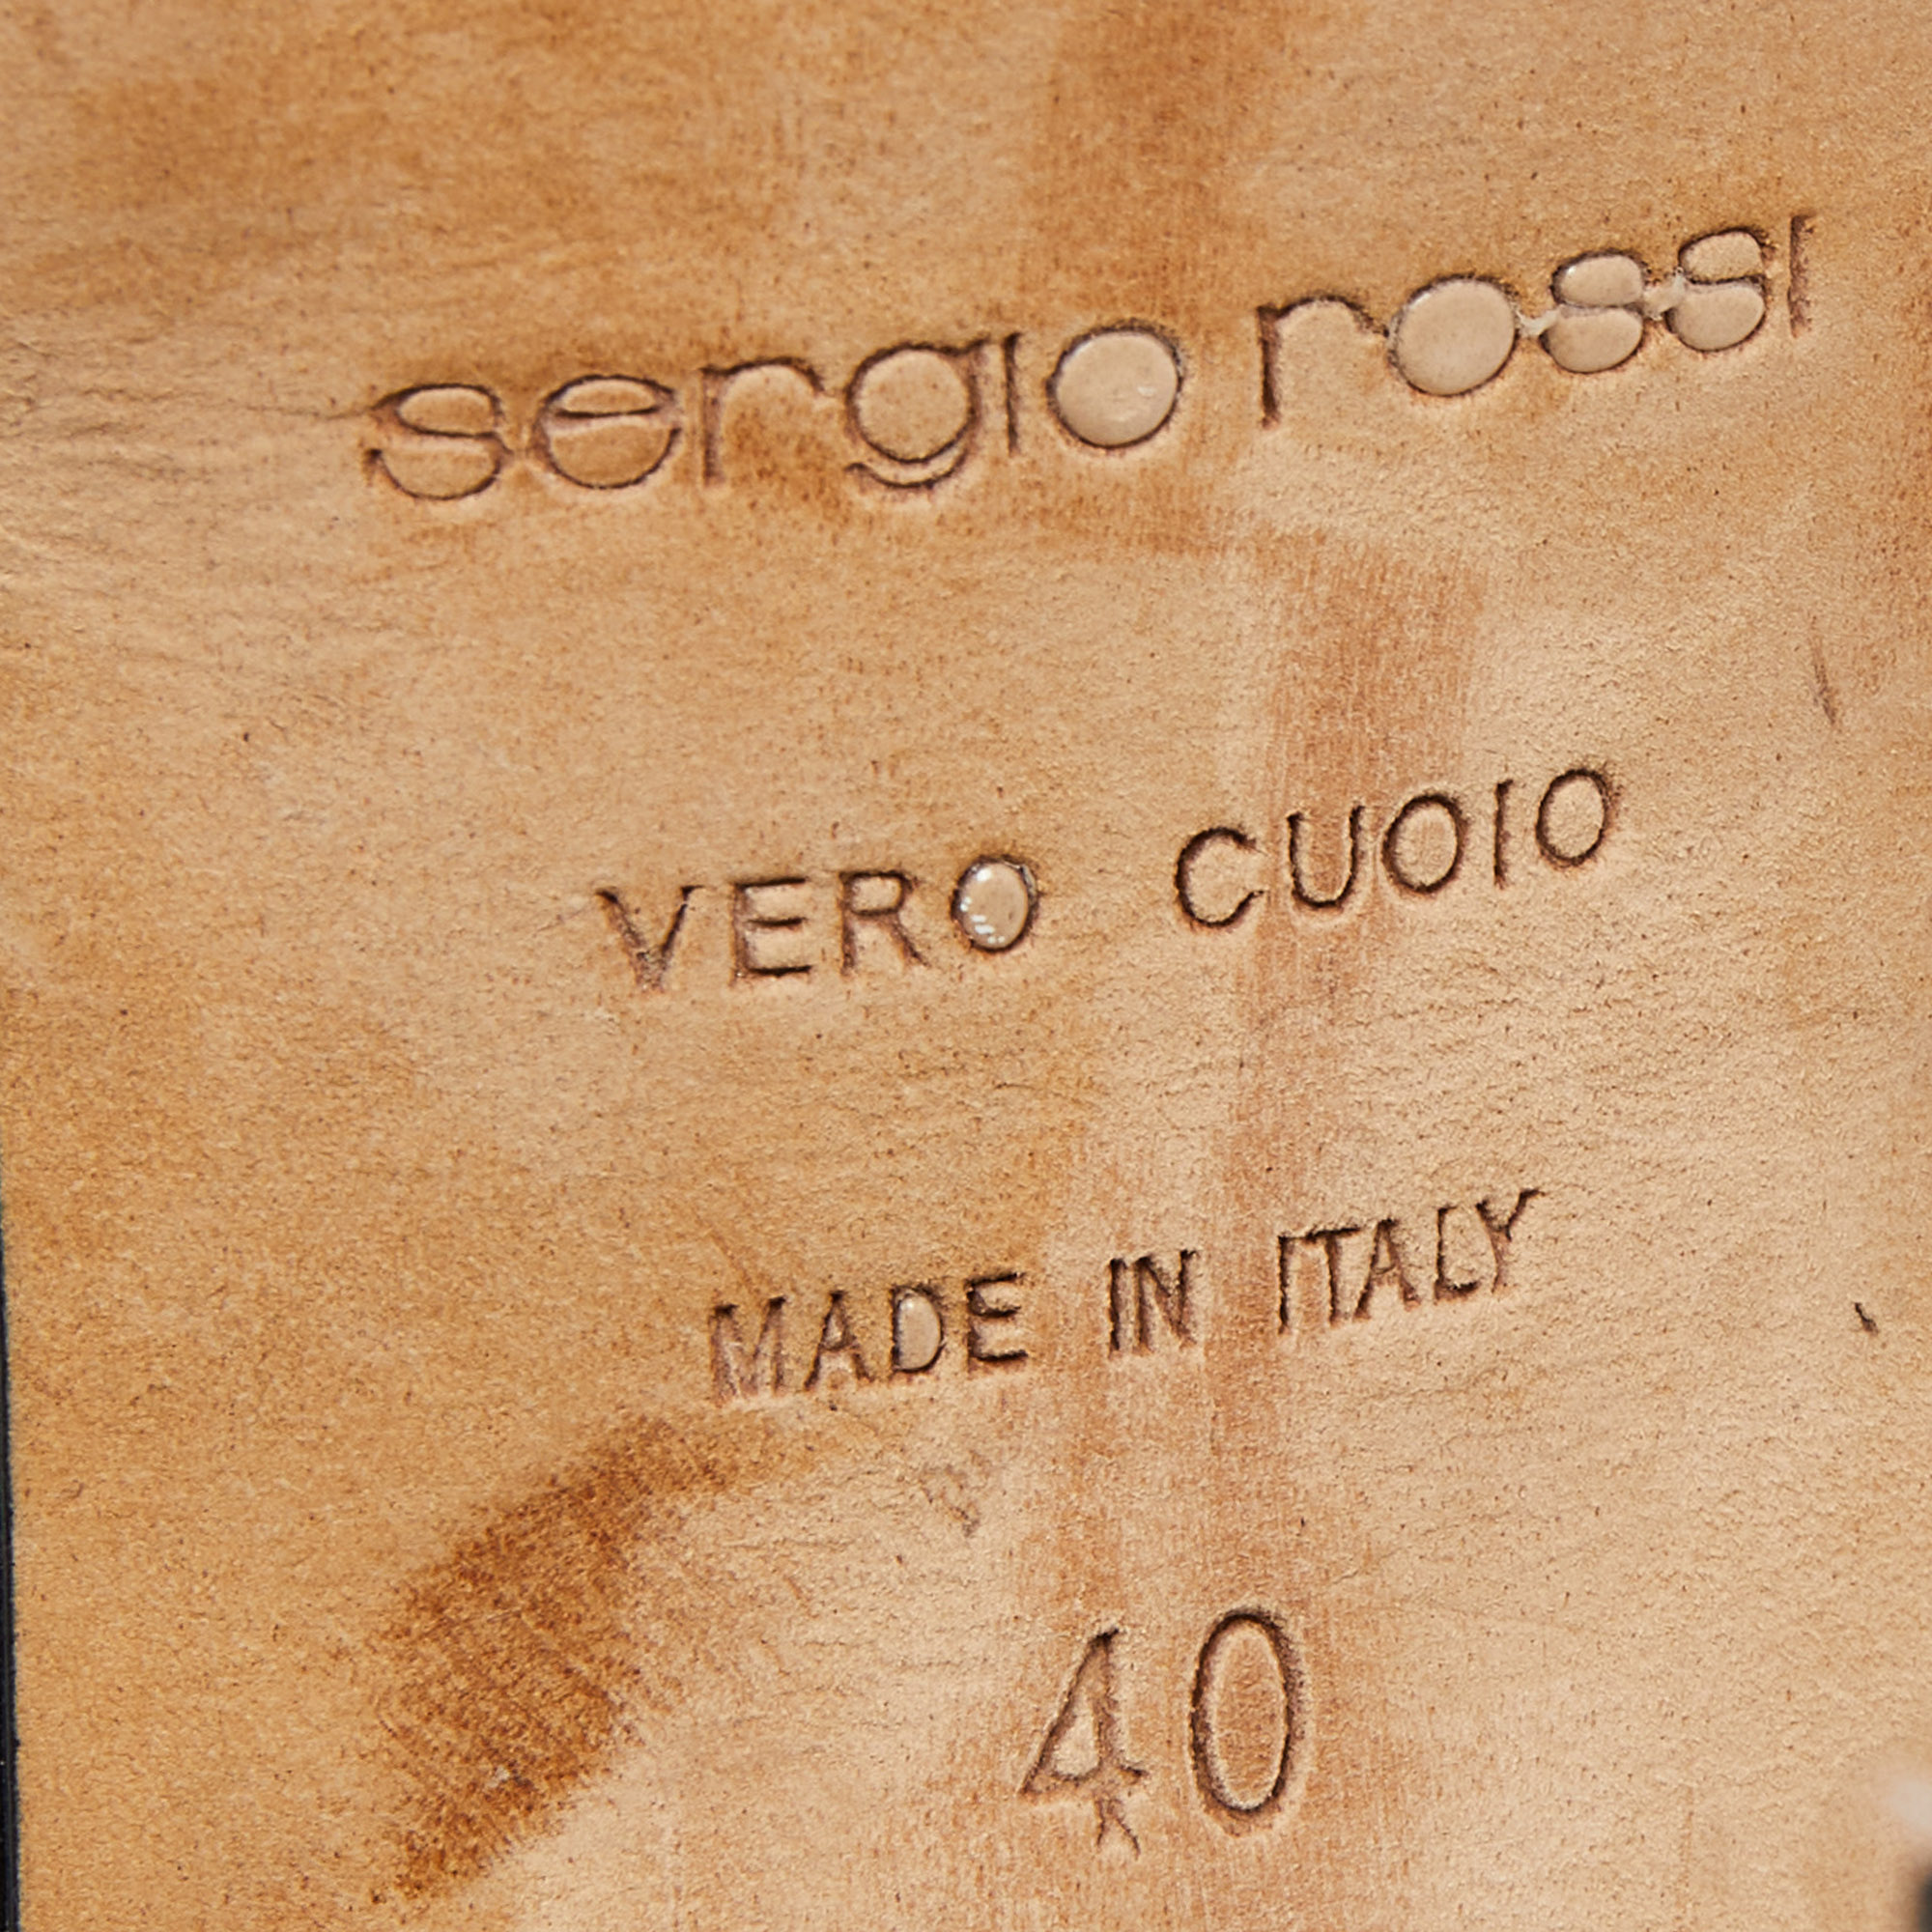 Sergio Rossi Tricolor Suede Strappy Sandals Size 40